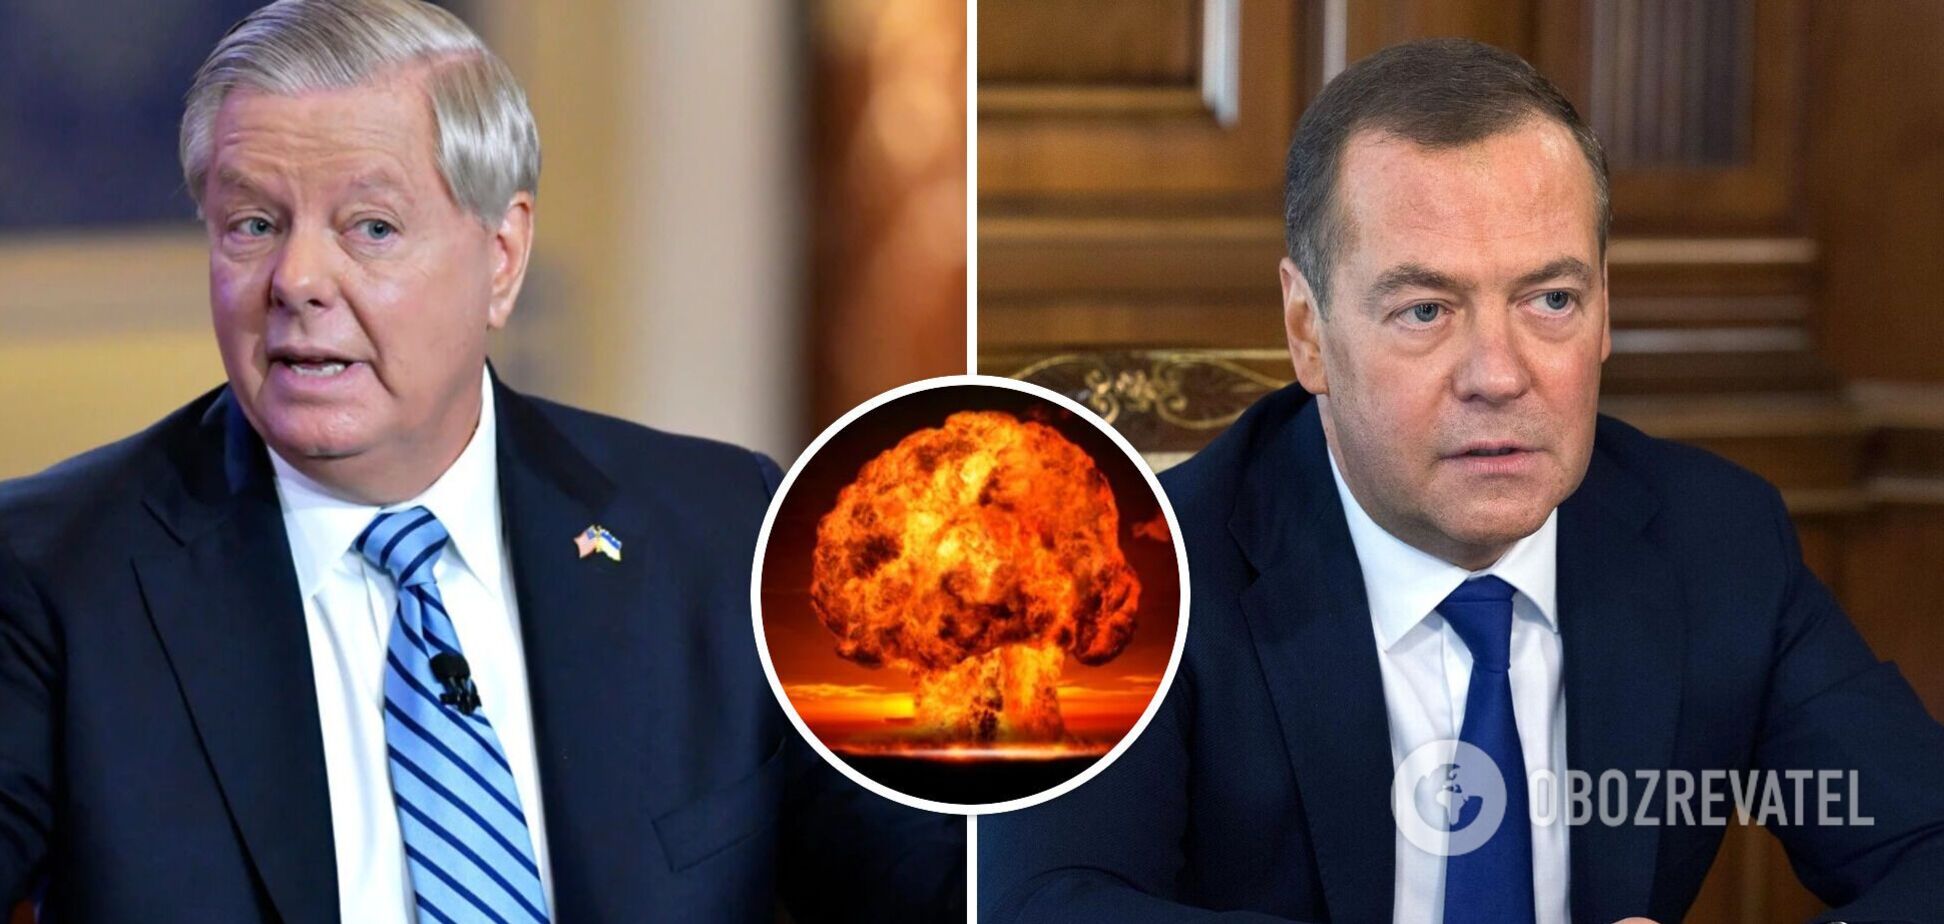 'Час протверезіти': сенатор США відповів на ядерні погрози Медведєва